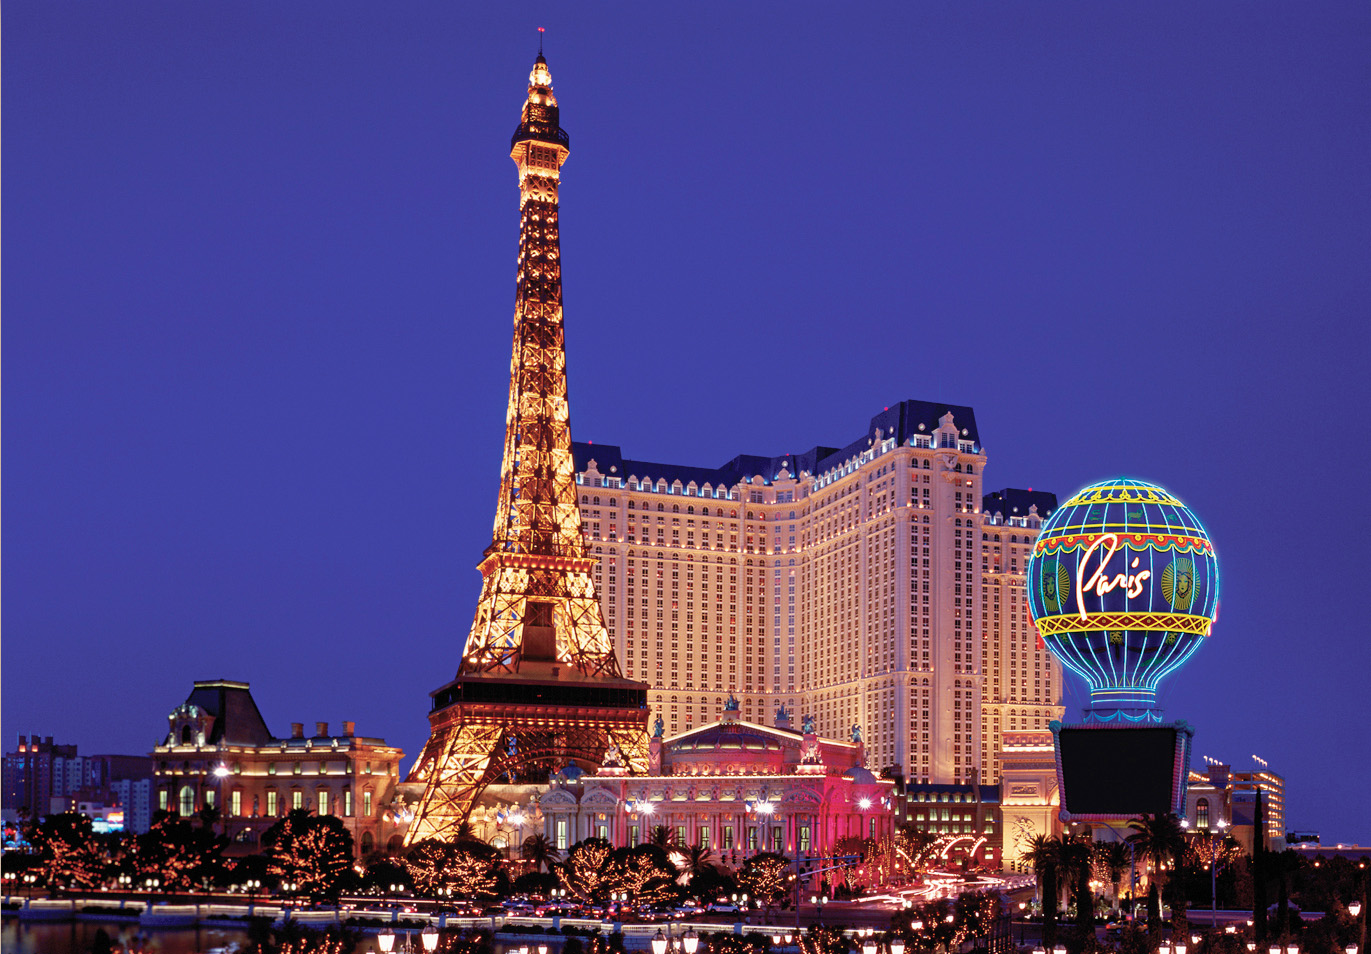 The Paris Las Vegas at night